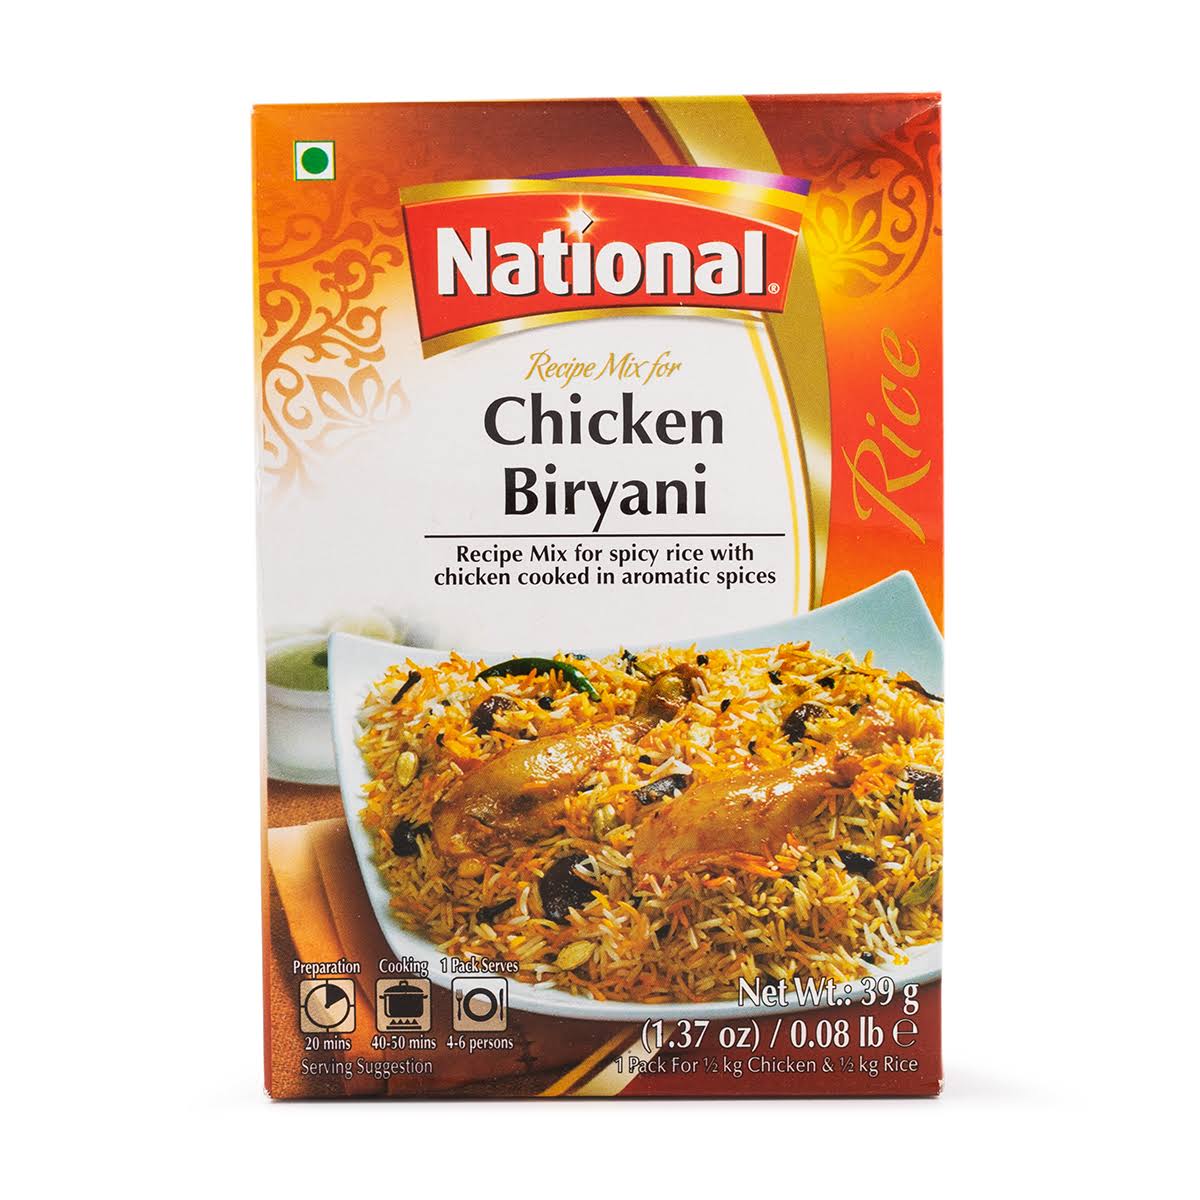 National Chicken Biryani 39g